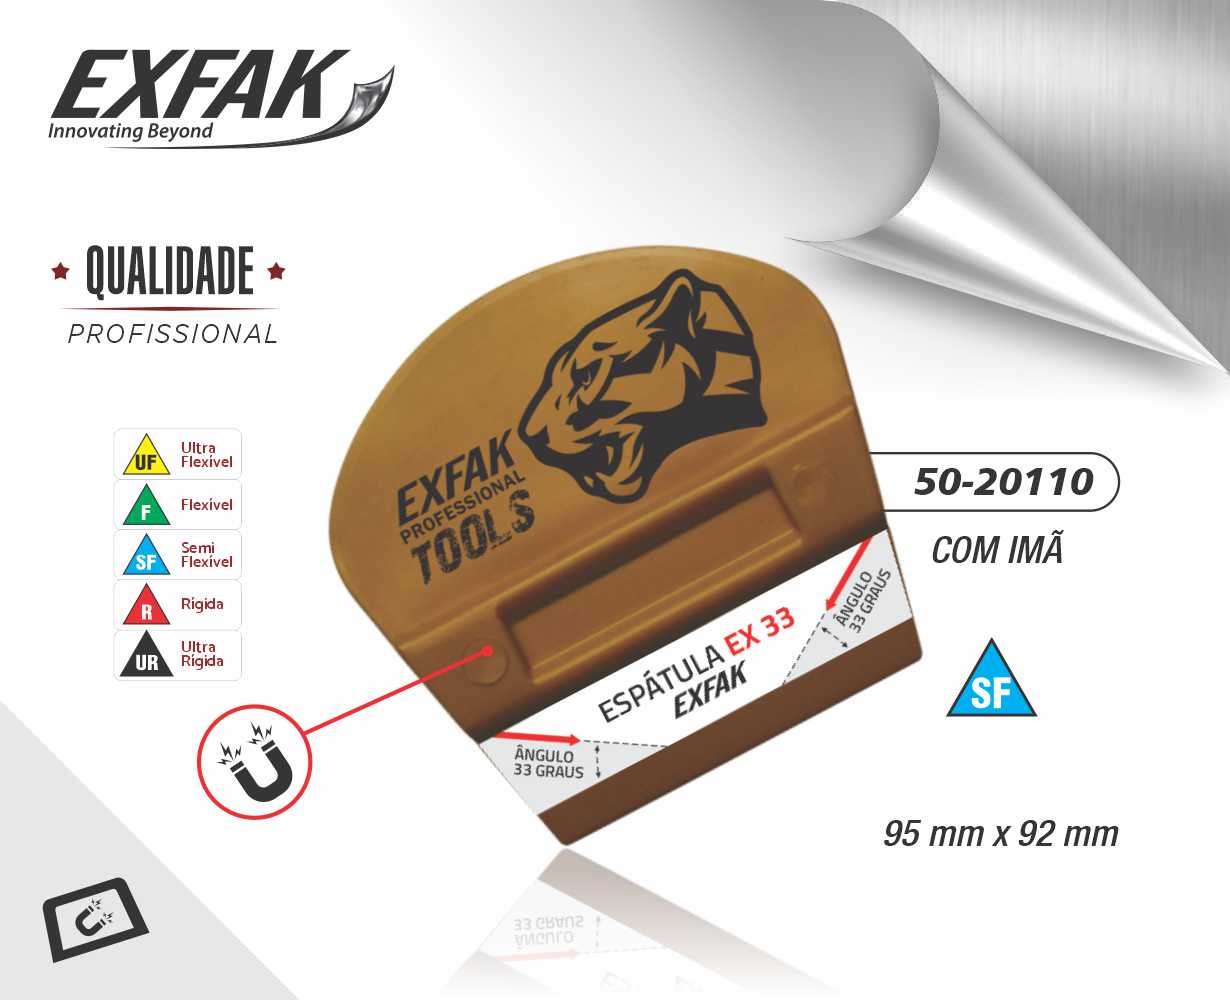 ESPATULA EX 33° LEQUE PROFISSIONAL  GOLD PARA ENVELOPAMENTO COM IMÃ - EXFAK - SEMI FLEXIVEL  - EXFAK